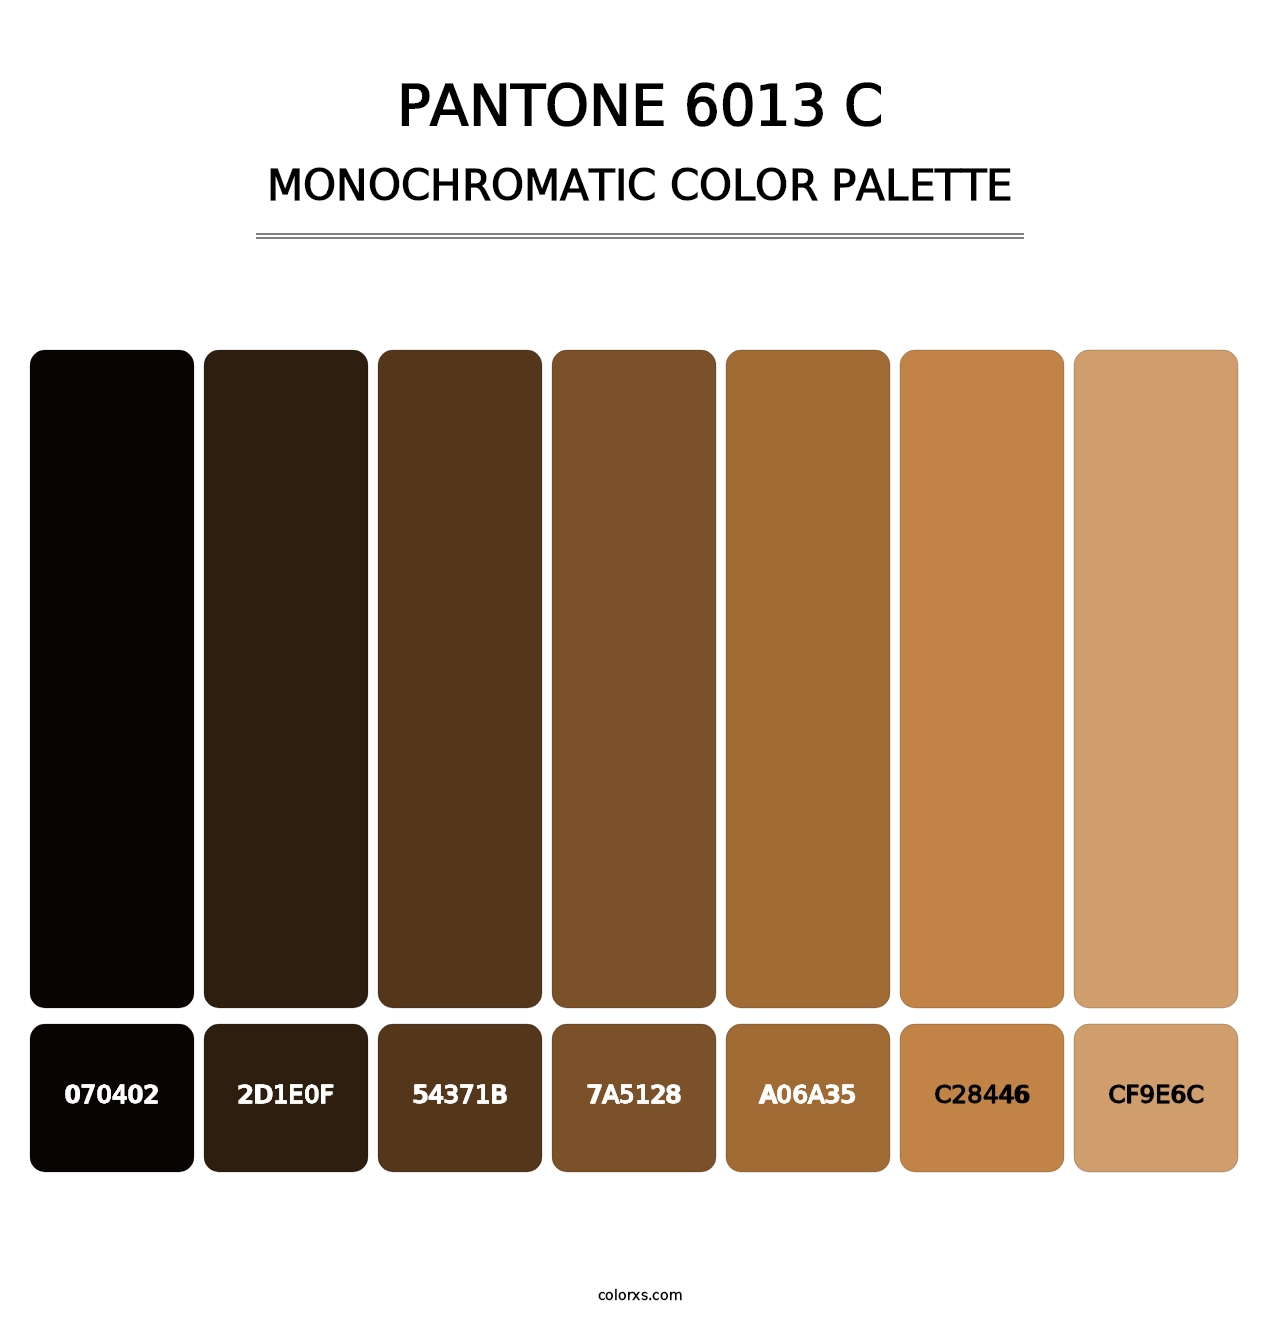 PANTONE 6013 C - Monochromatic Color Palette